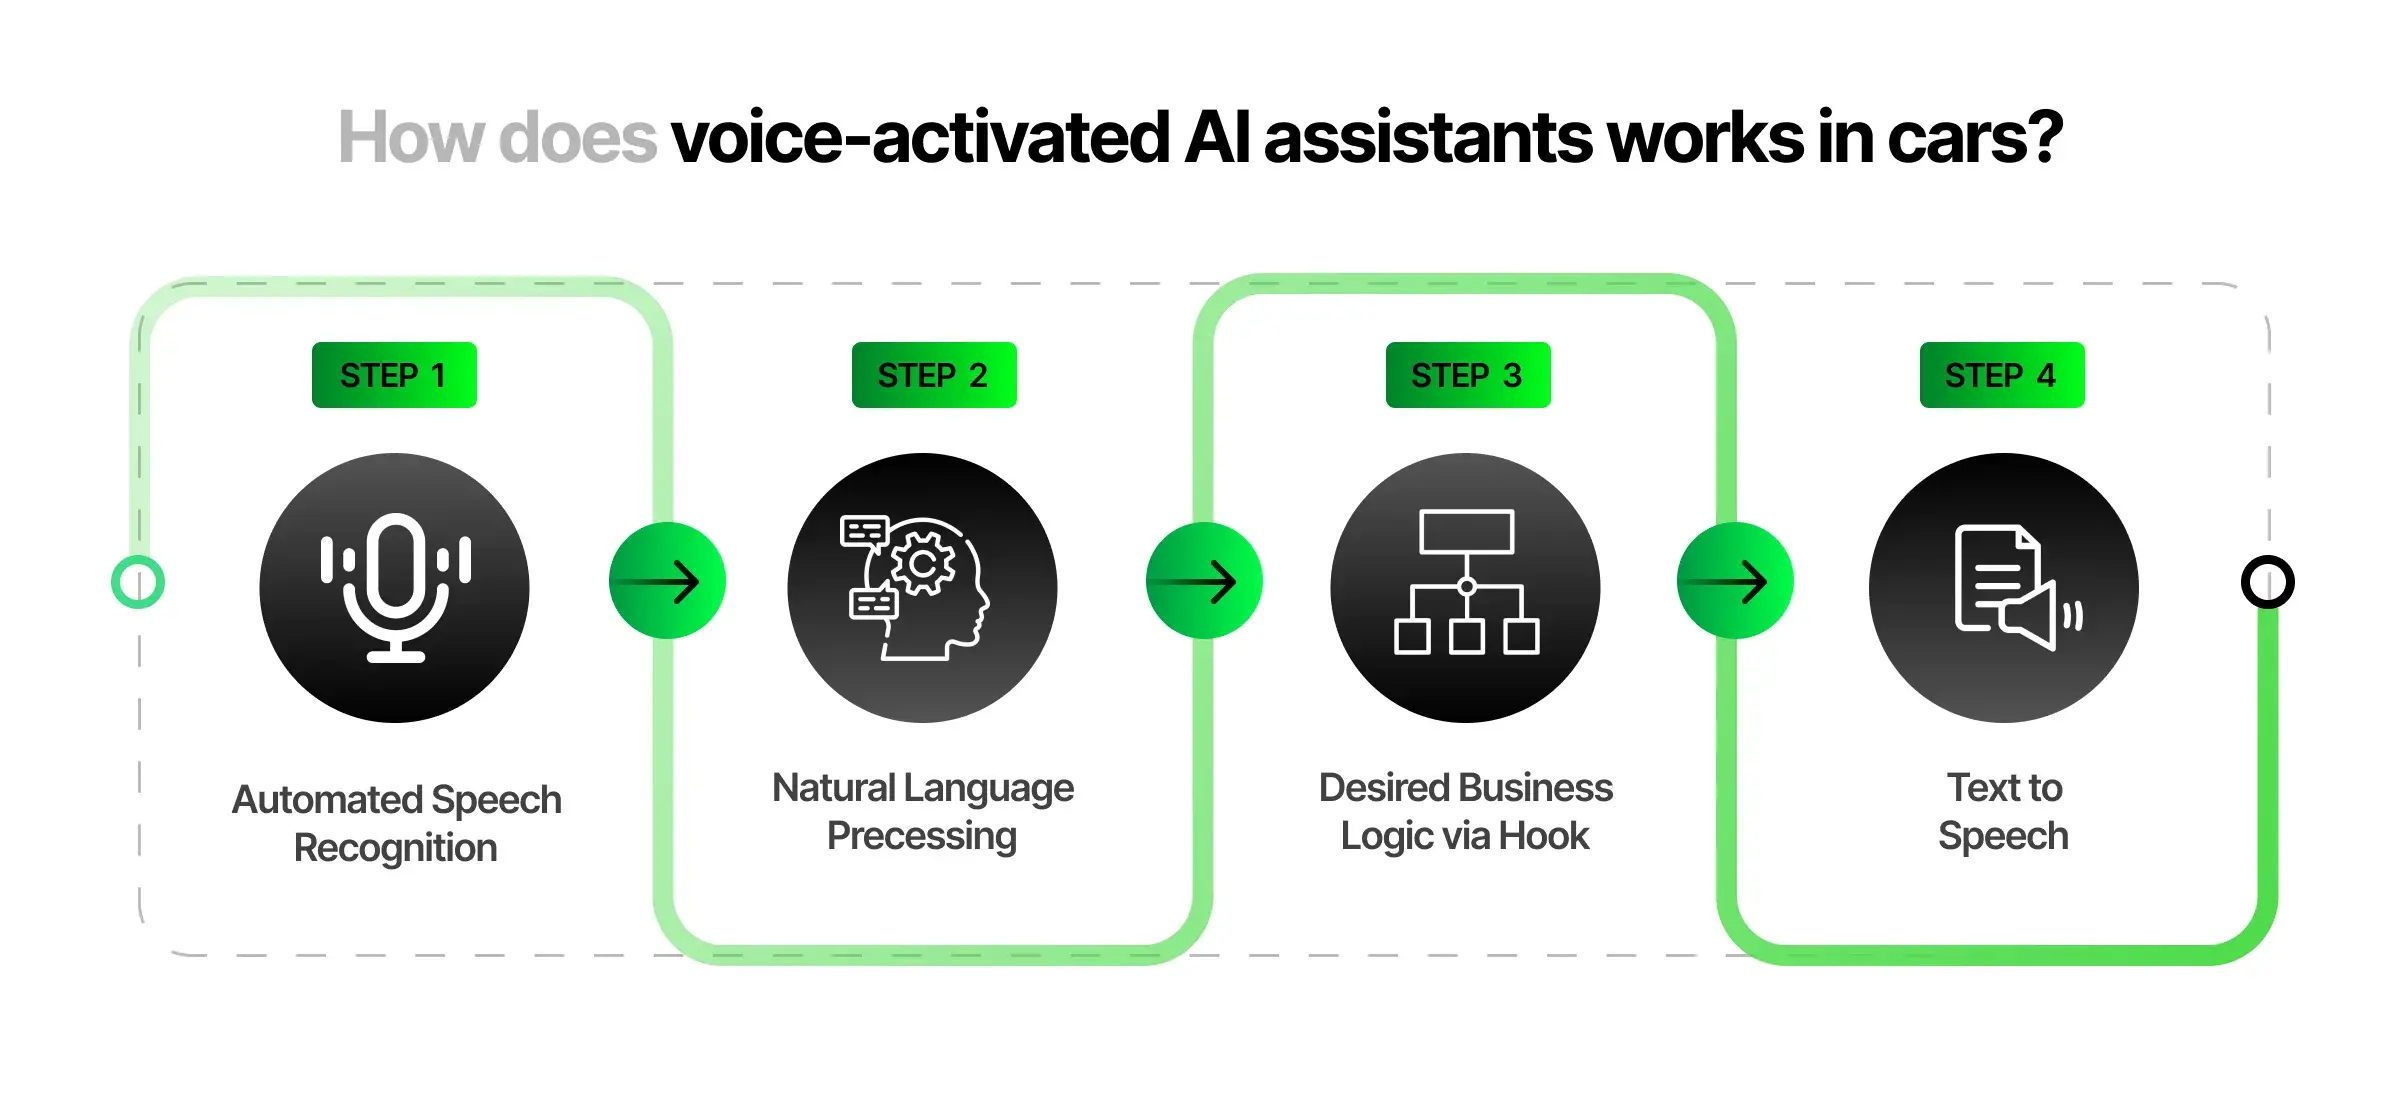 Voice-activated AI Assistants